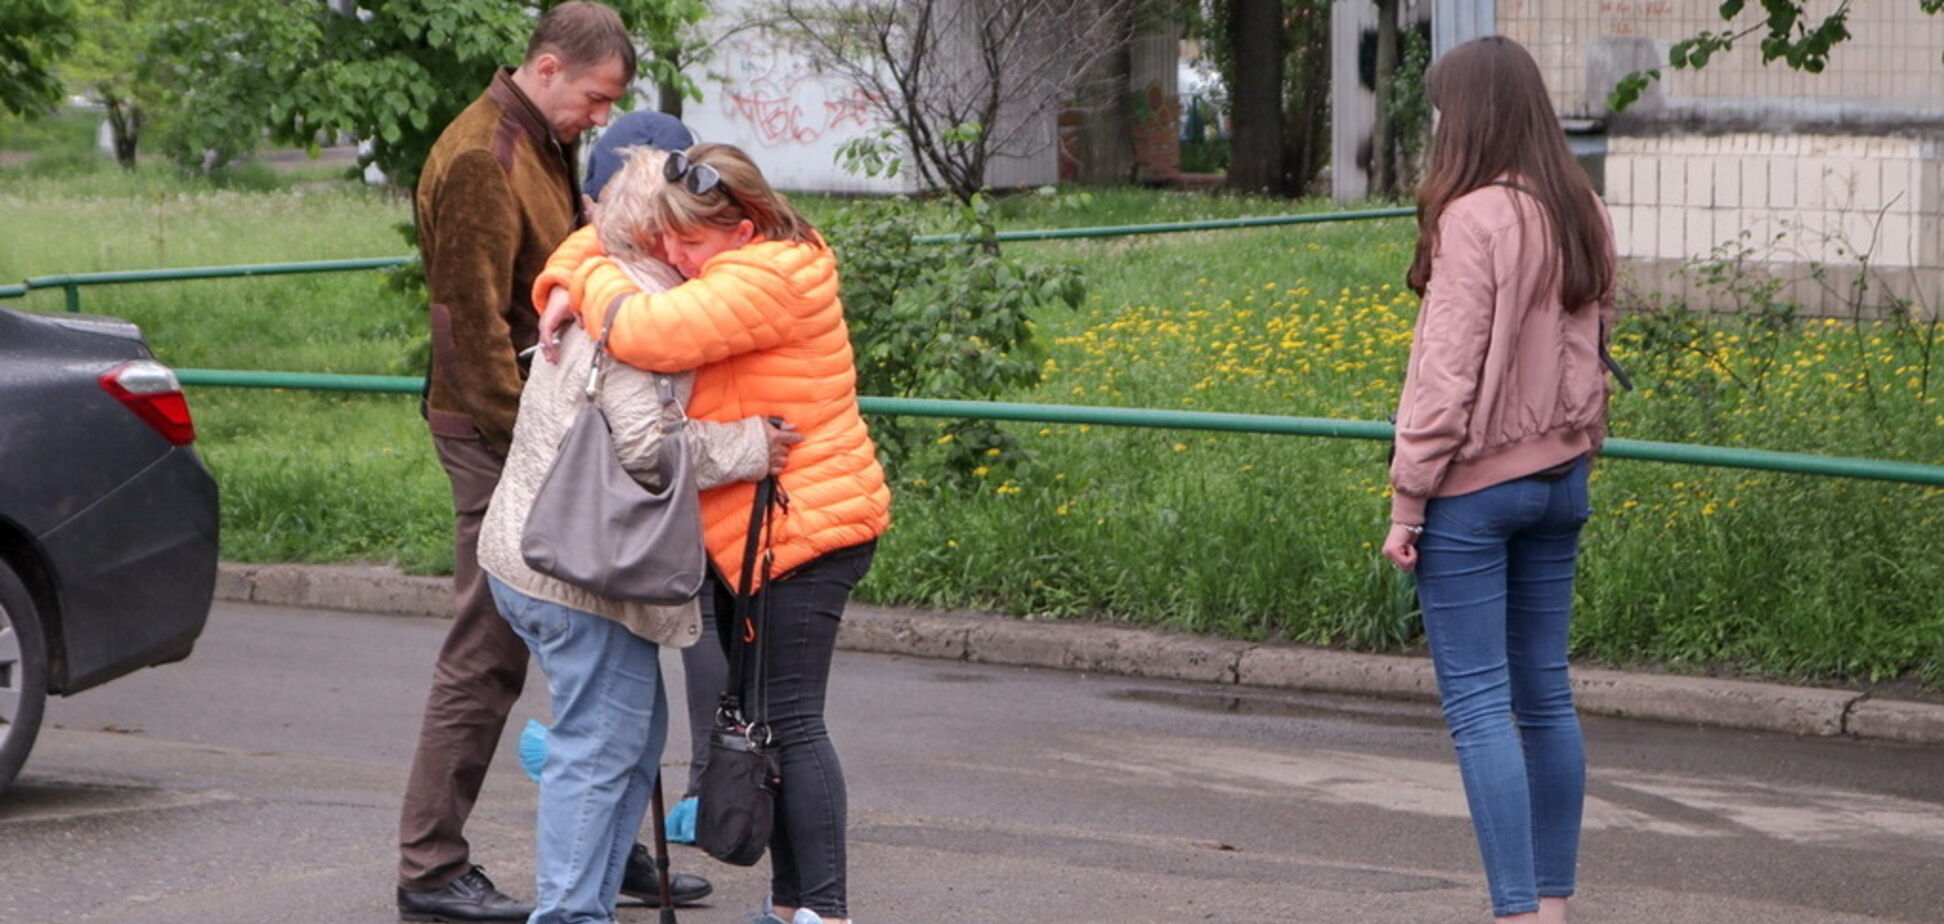 В Киеве в квартире обнаружили два трупа и изможденного ребенка